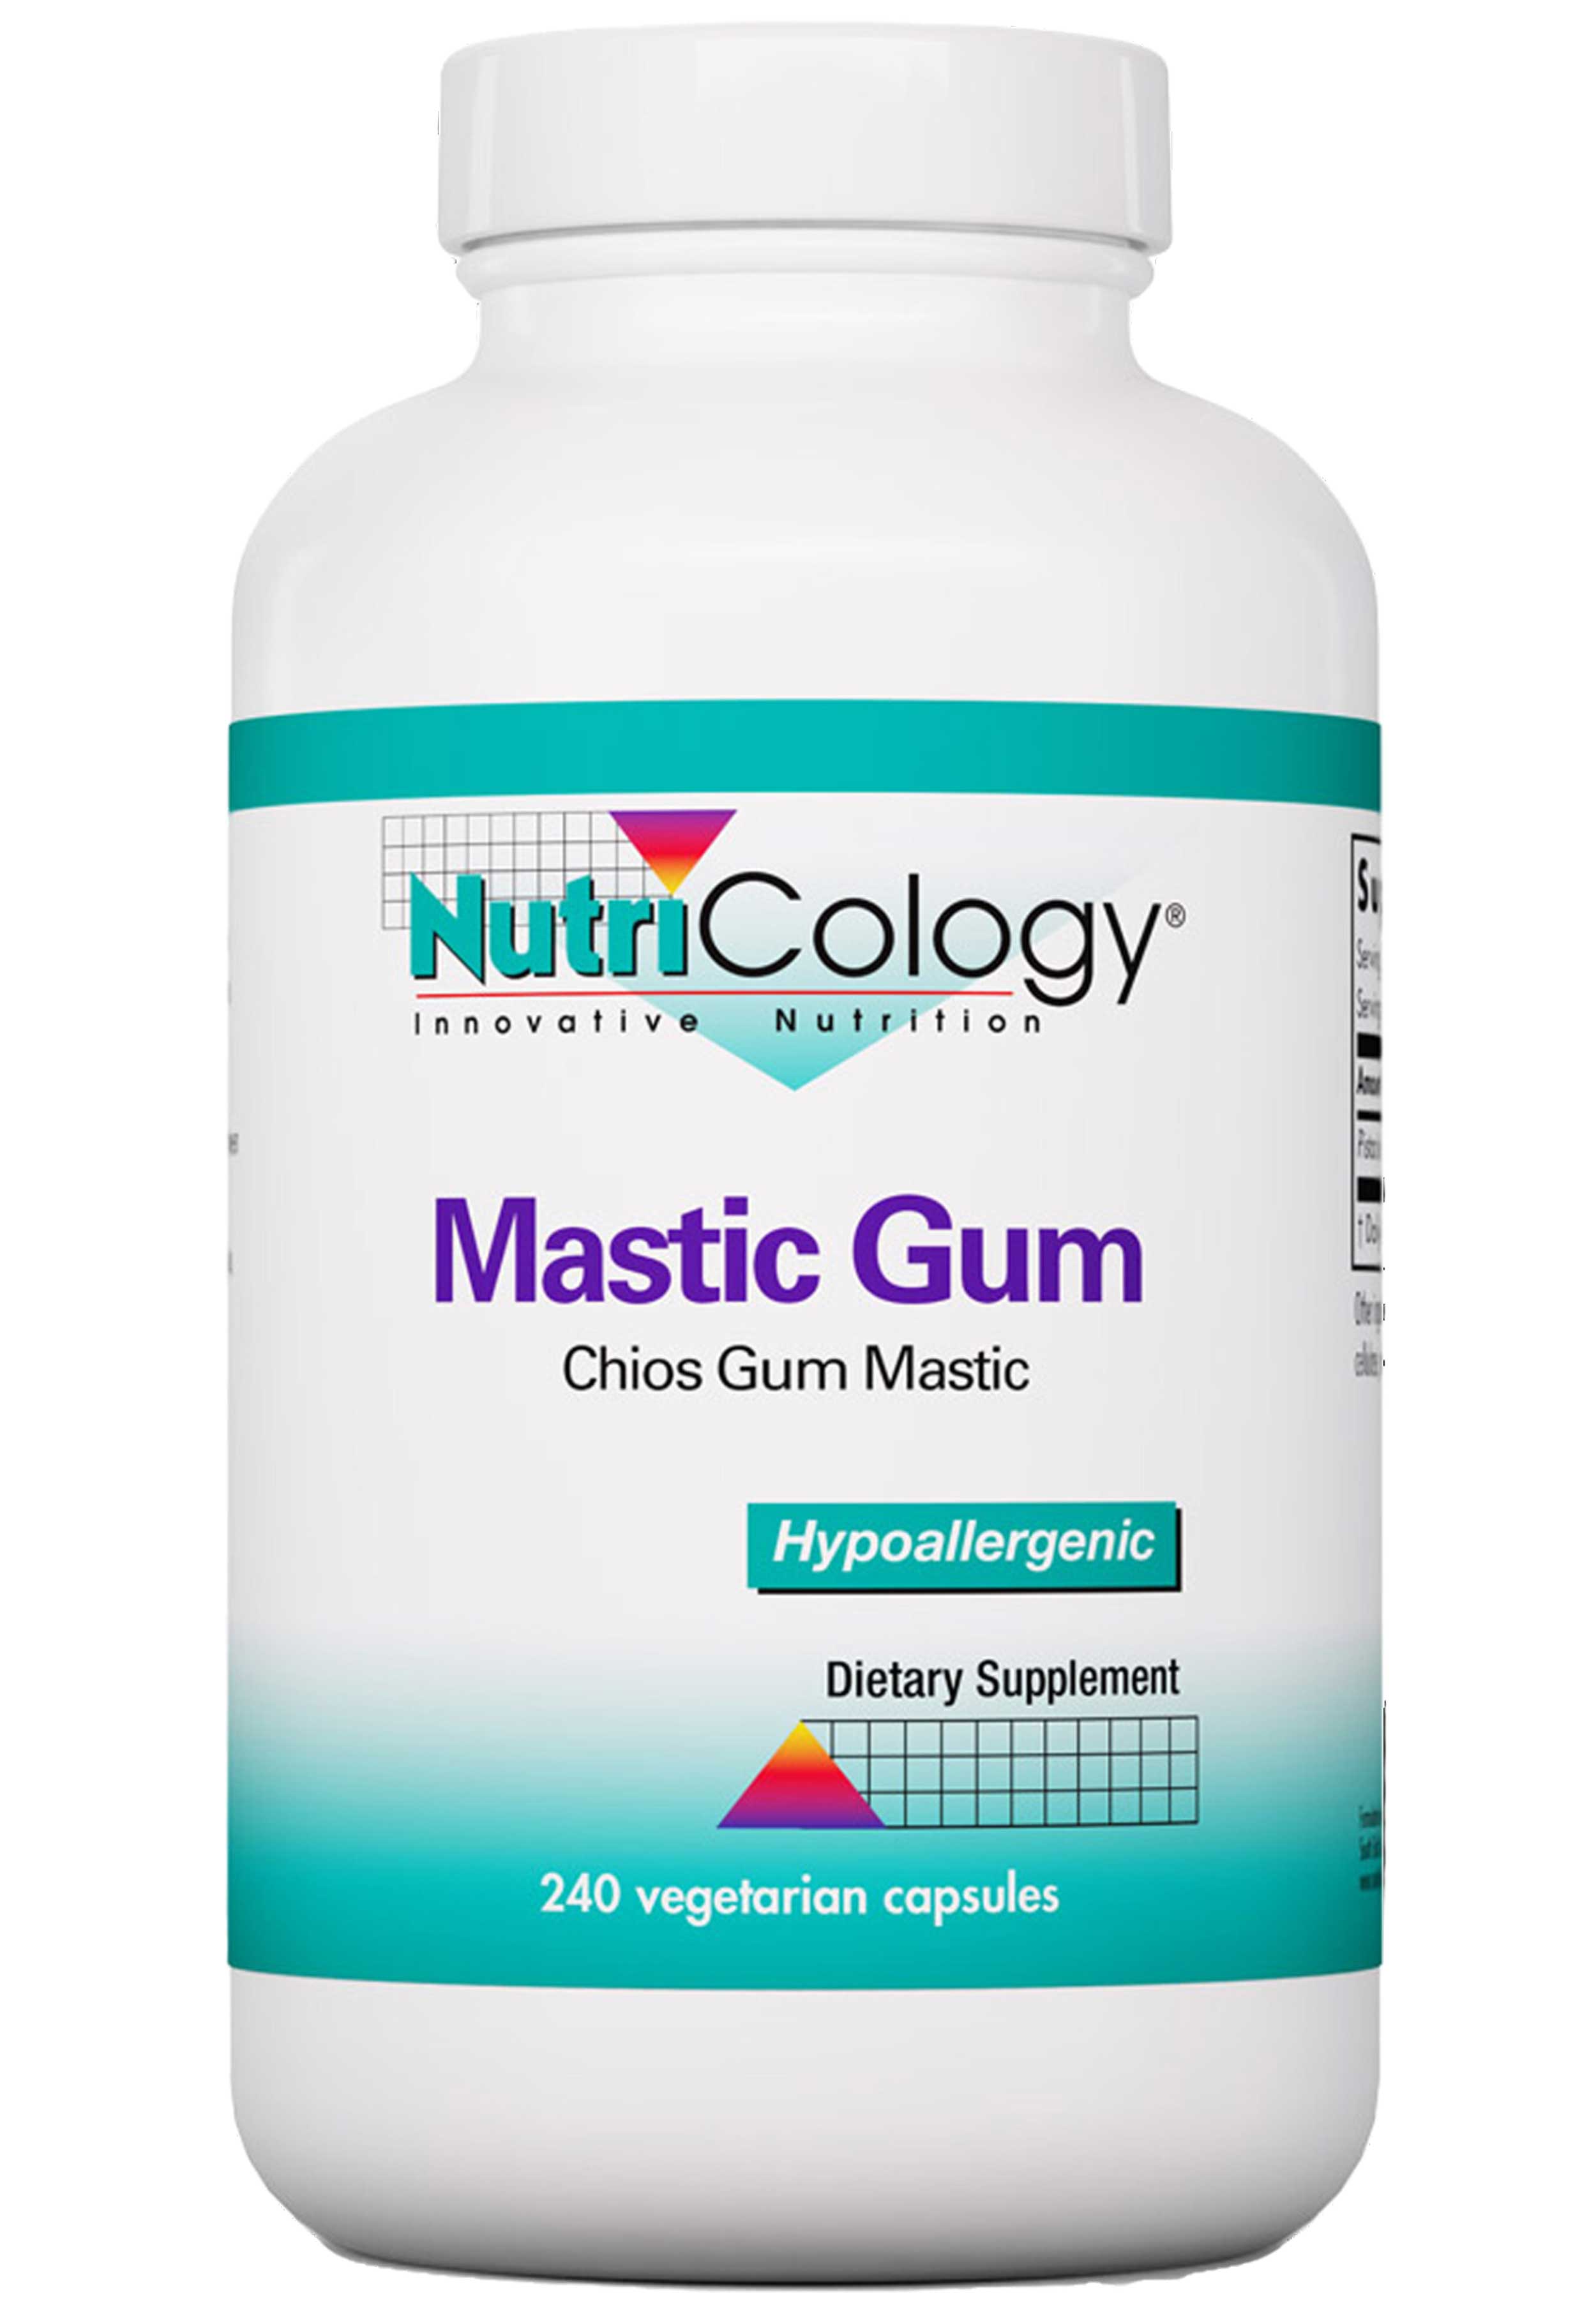 Nutricology Mastic Gum